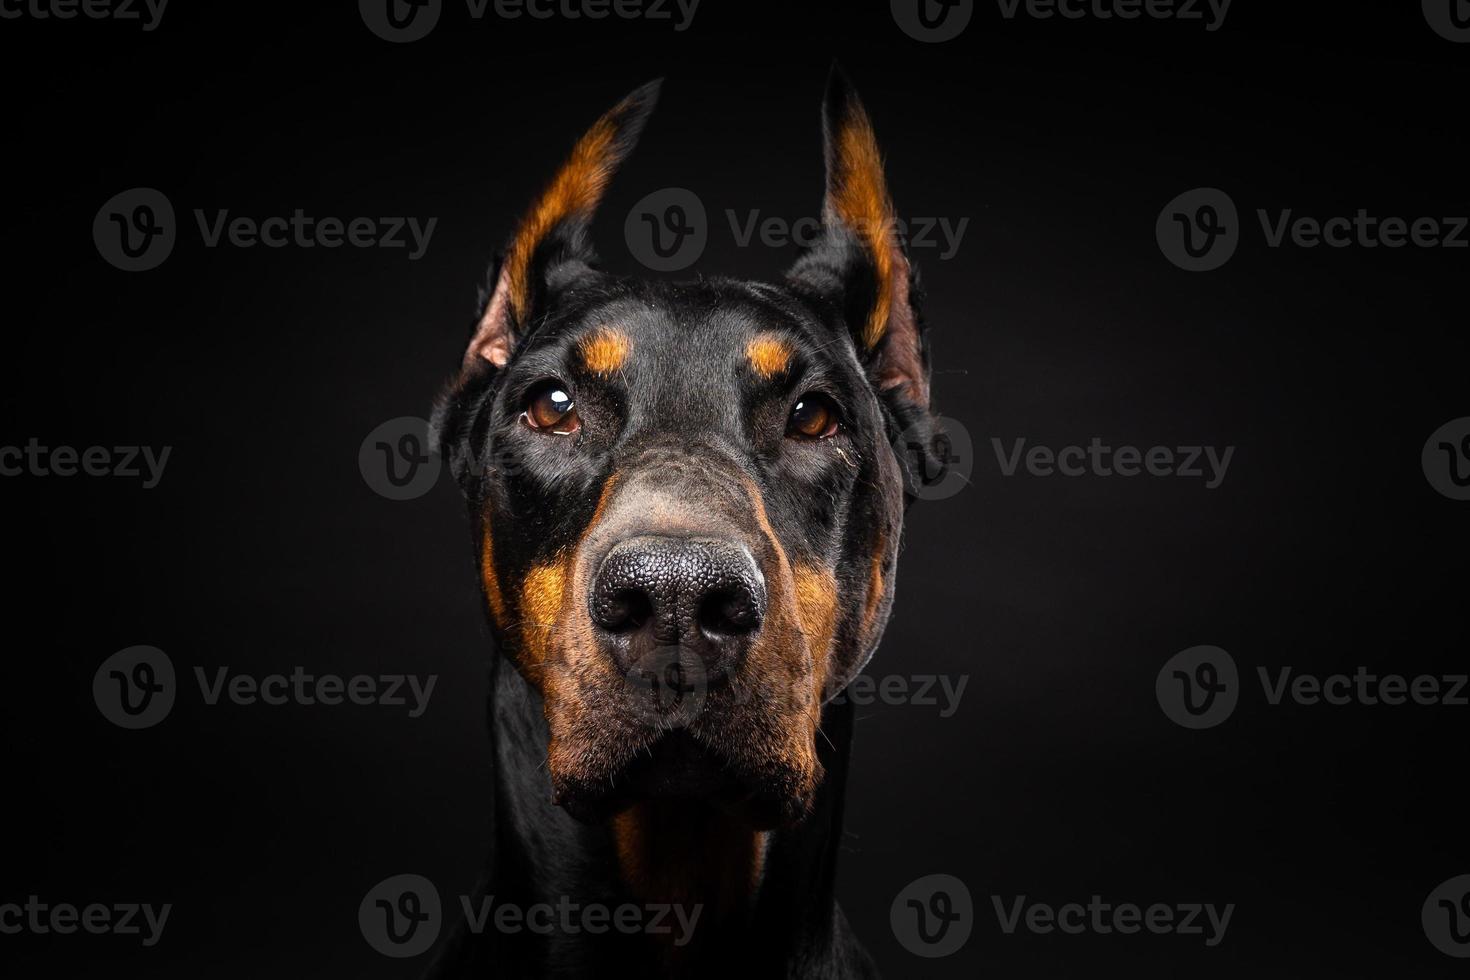 retrato de un perro doberman sobre un fondo negro aislado. foto